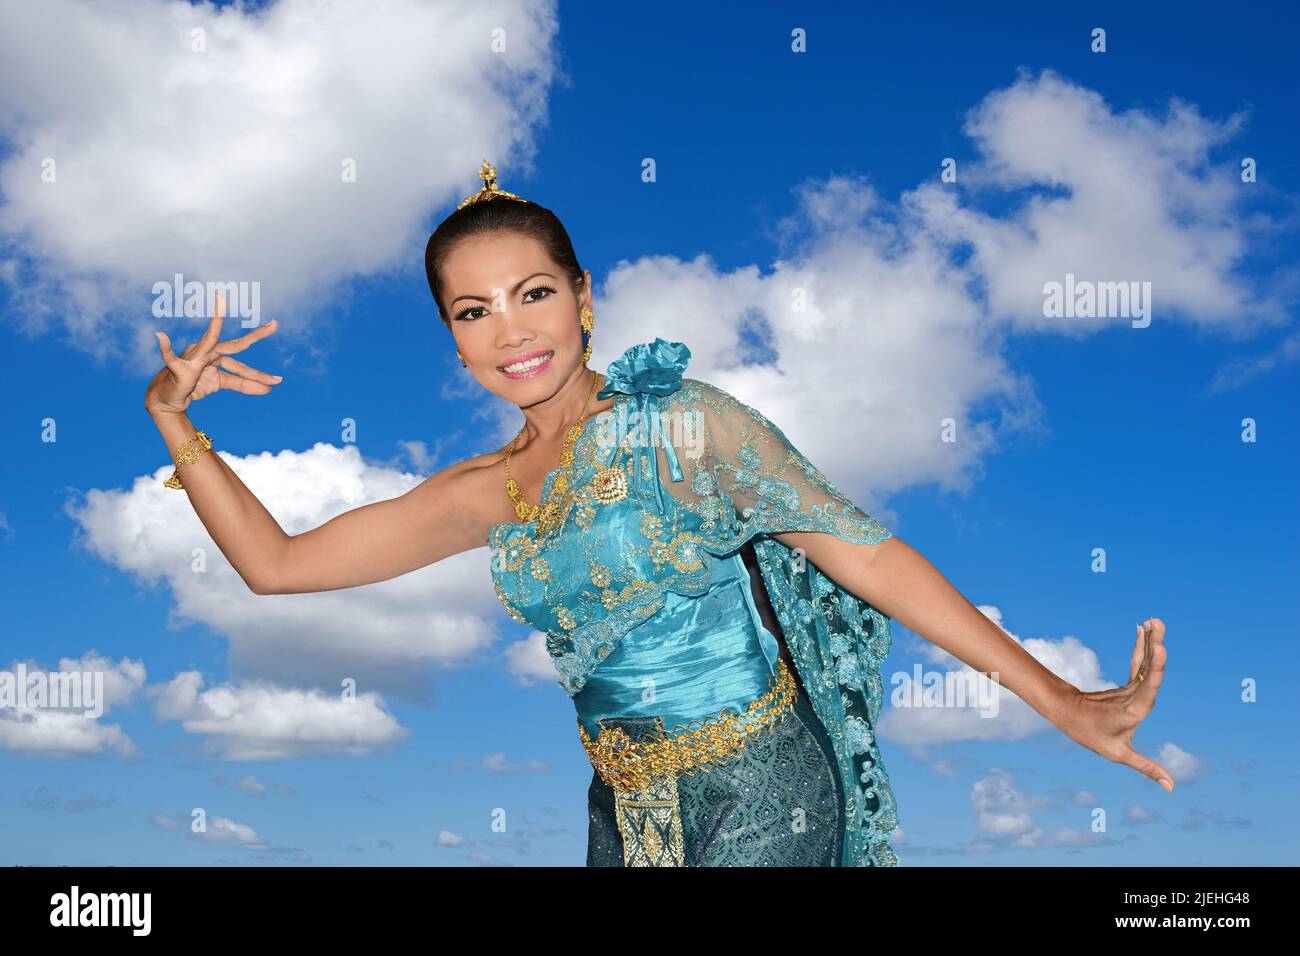 Tänzerin tanzt, folklore, Kostum, 35, Jahre, Frau, Frauen, Thai-Tanz, Tradition, Sommer, blauer Himmel, Cumuluswolken, Kostüm, Nina, Banque D'Images